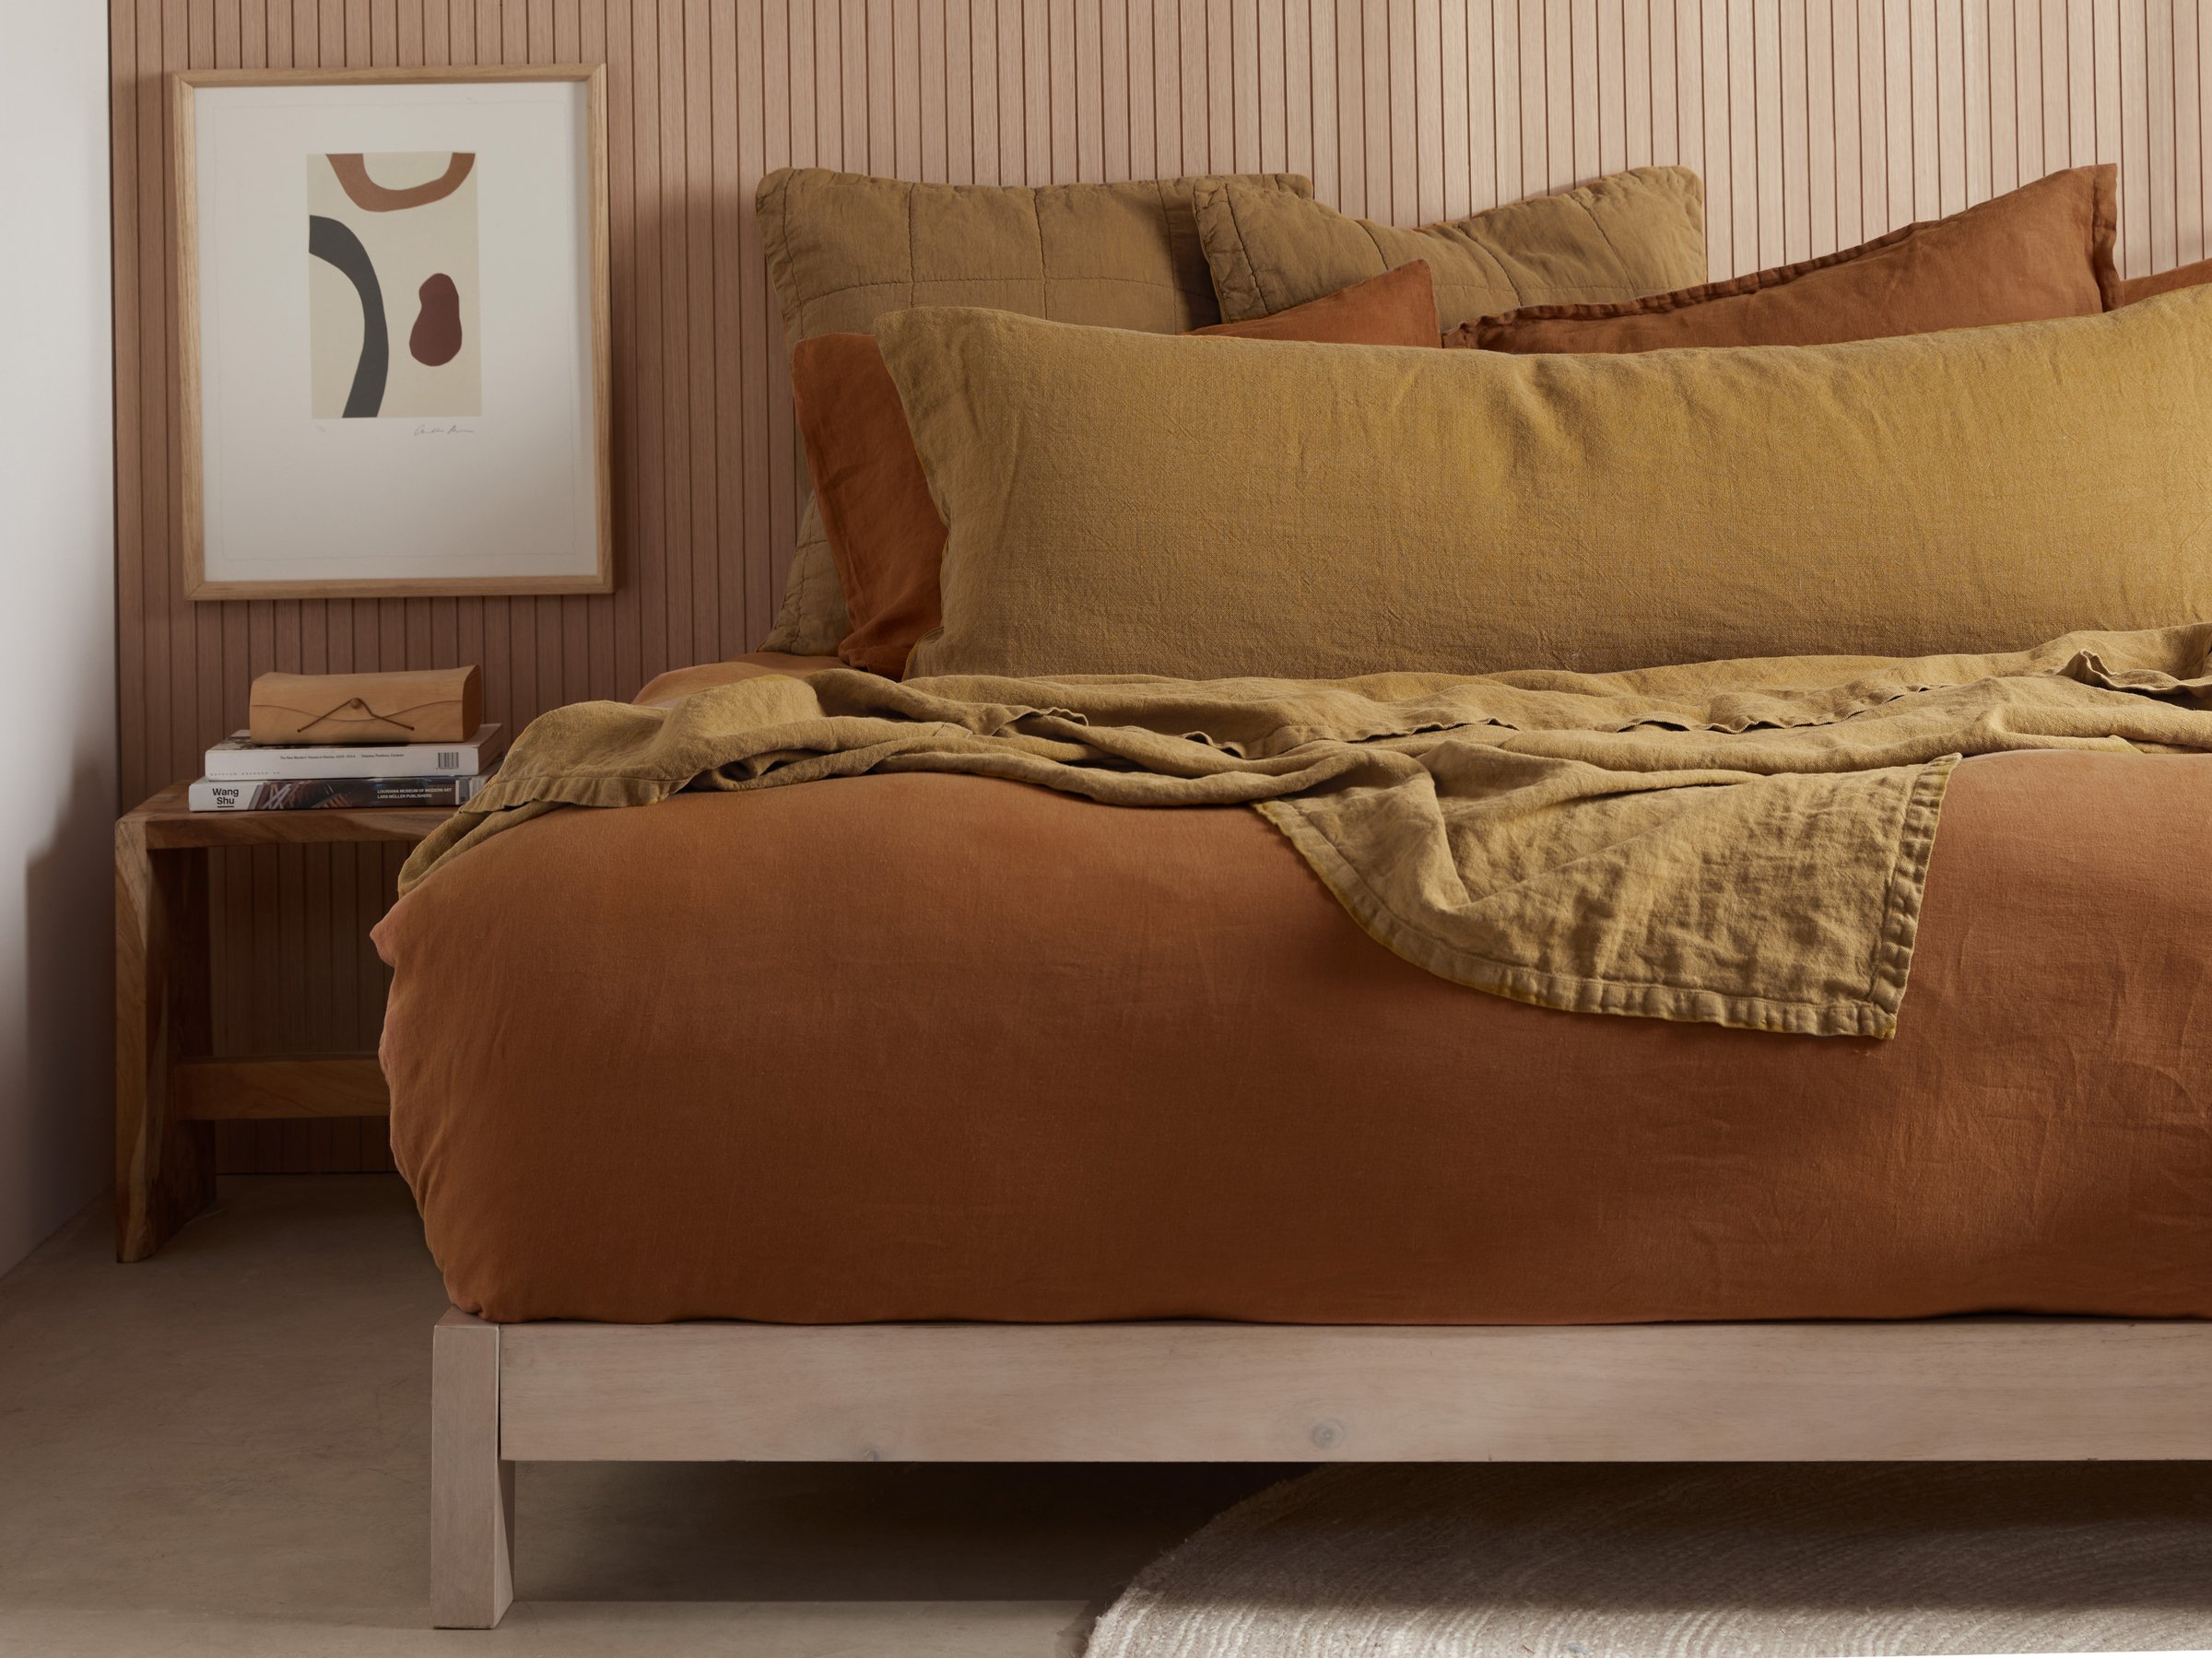 The Linen Body Pillow 22x54